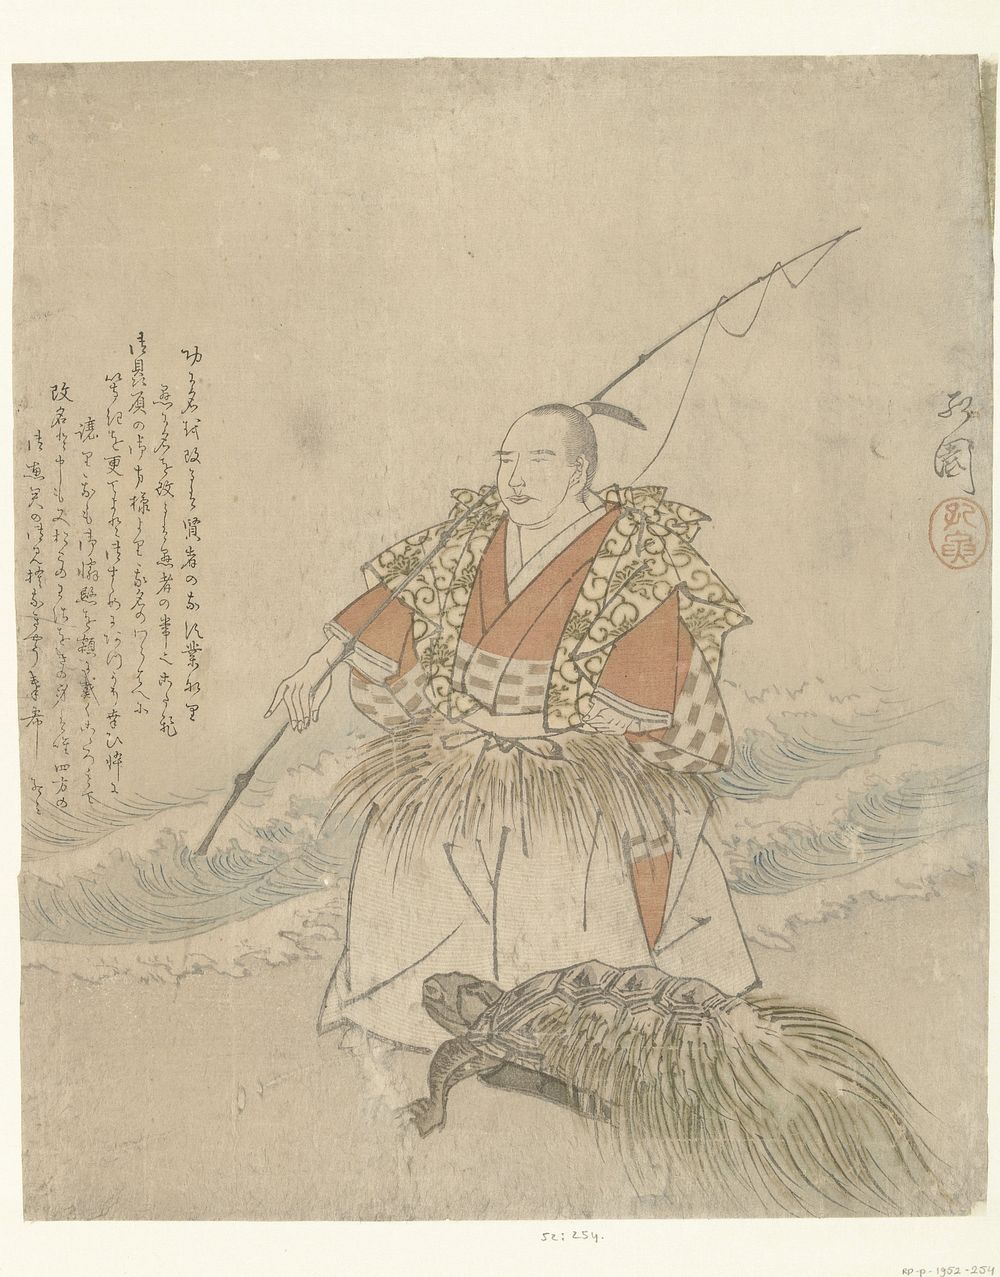 Urashima Taro (1860 - 1870) by Koen